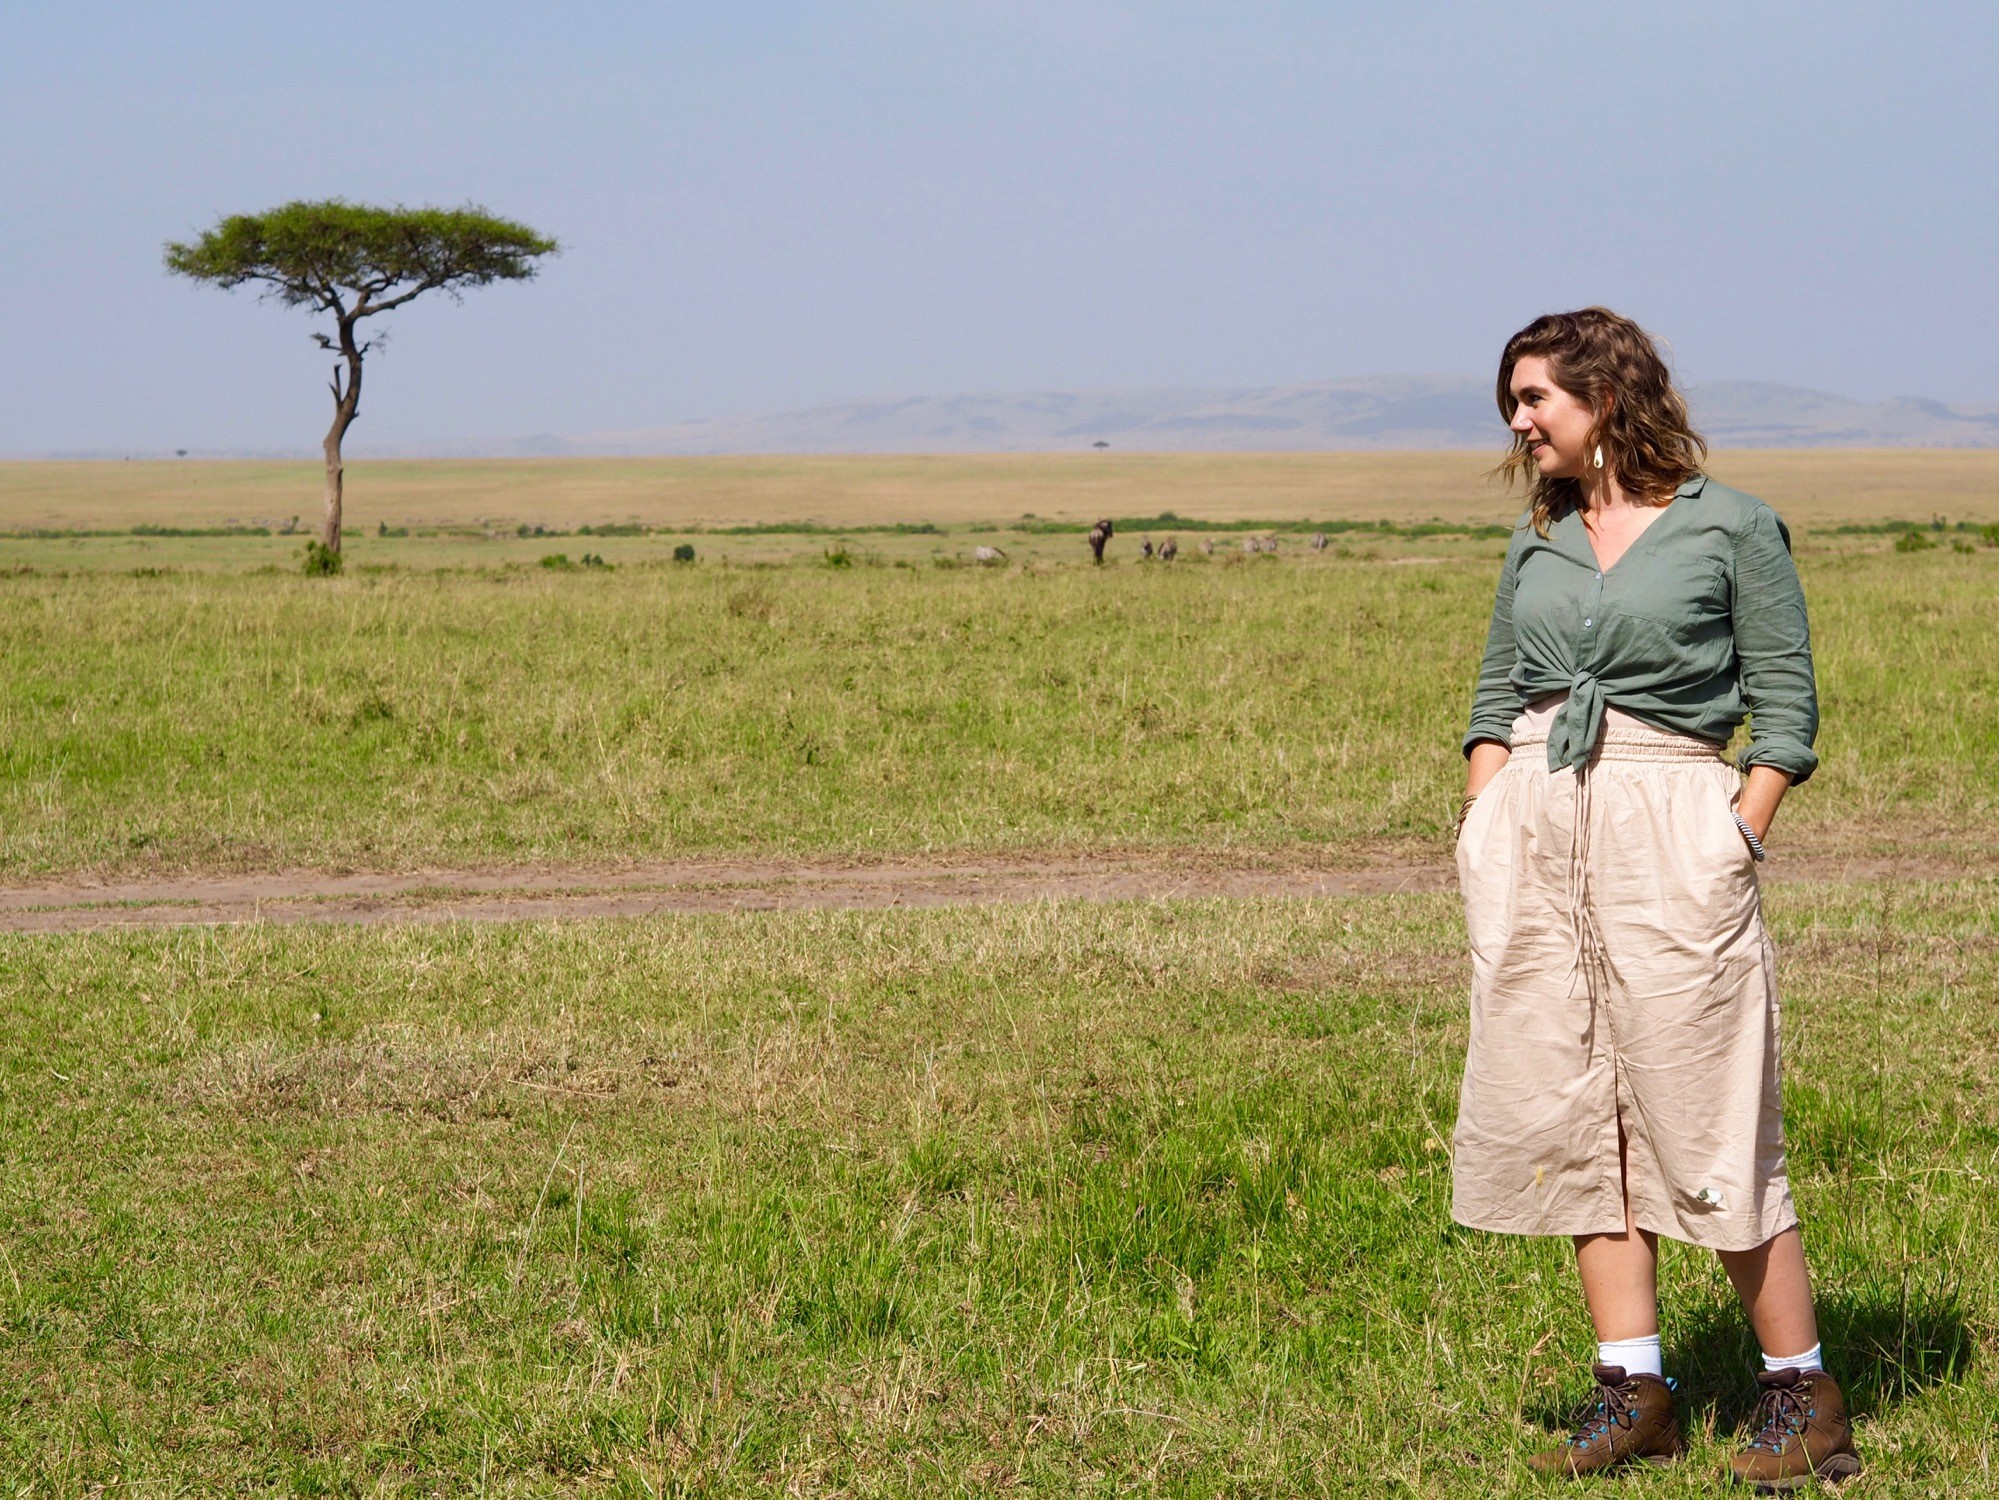 clothing for safari in kenya